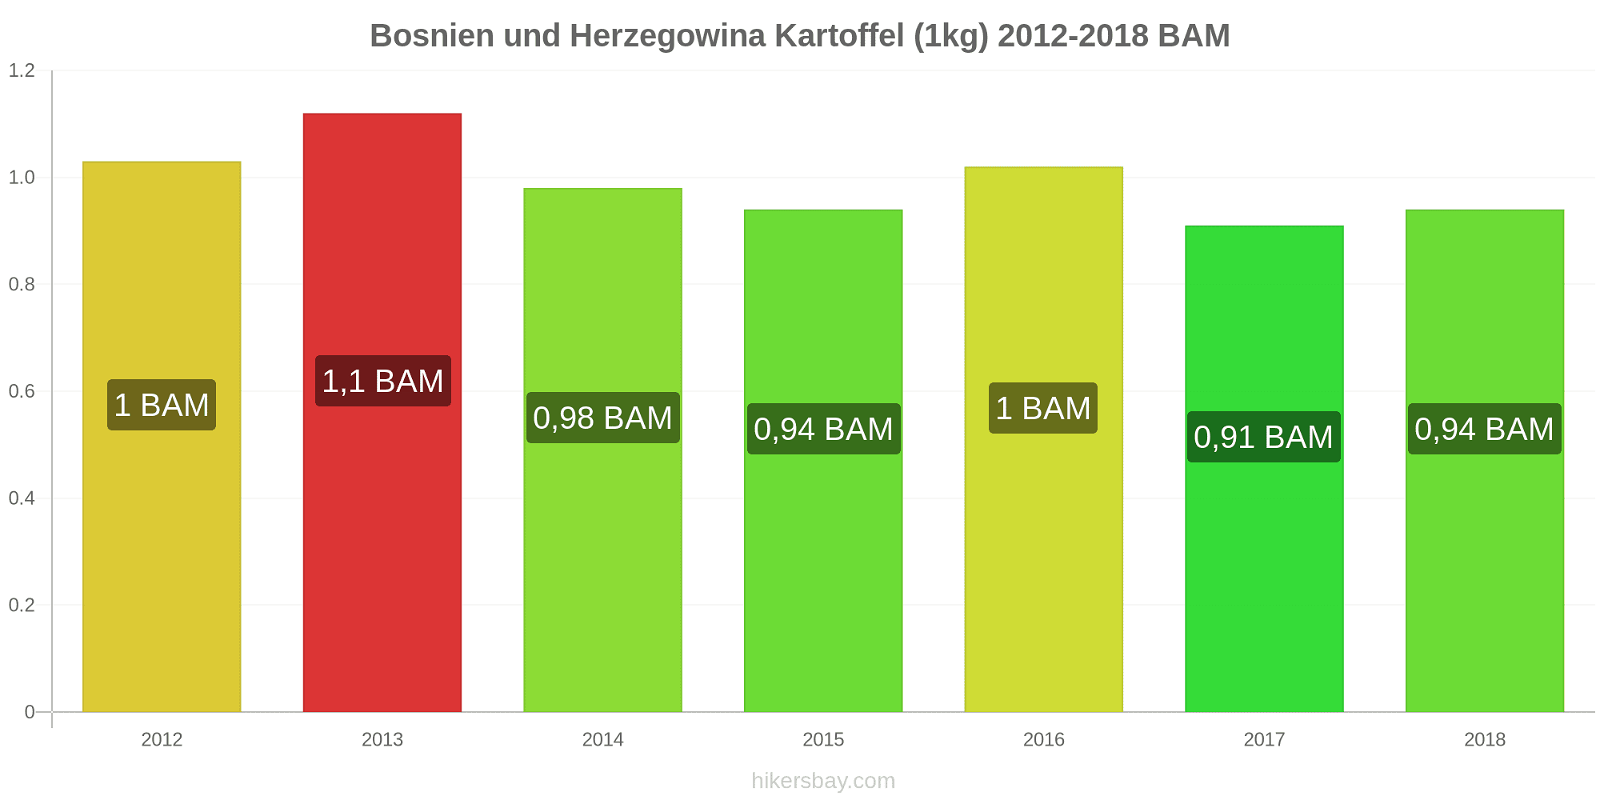 Bosnien und Herzegowina Preisänderungen Kartoffeln (1kg) hikersbay.com